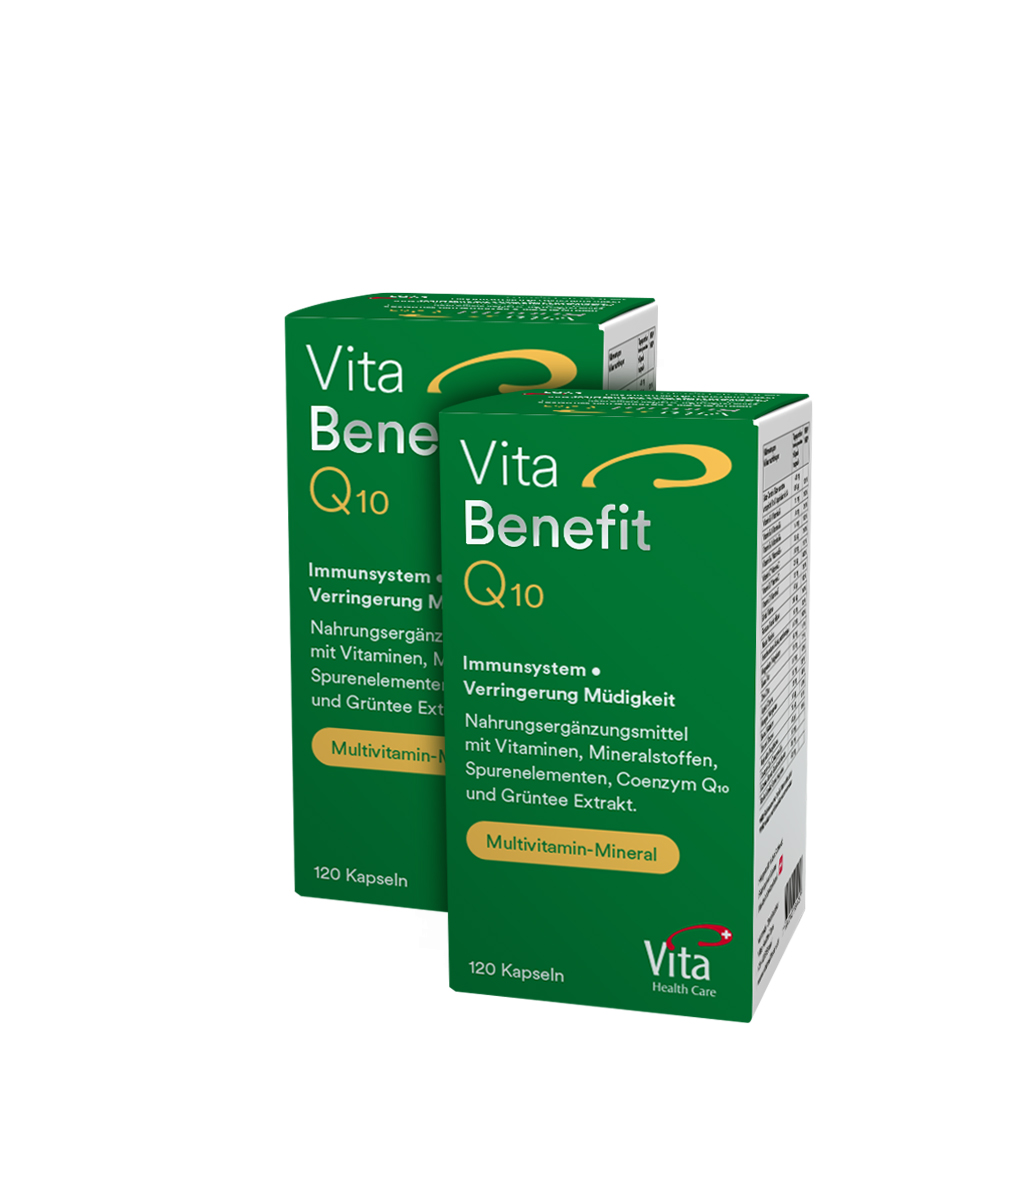 Vita Benefit Q10, Doppelpack